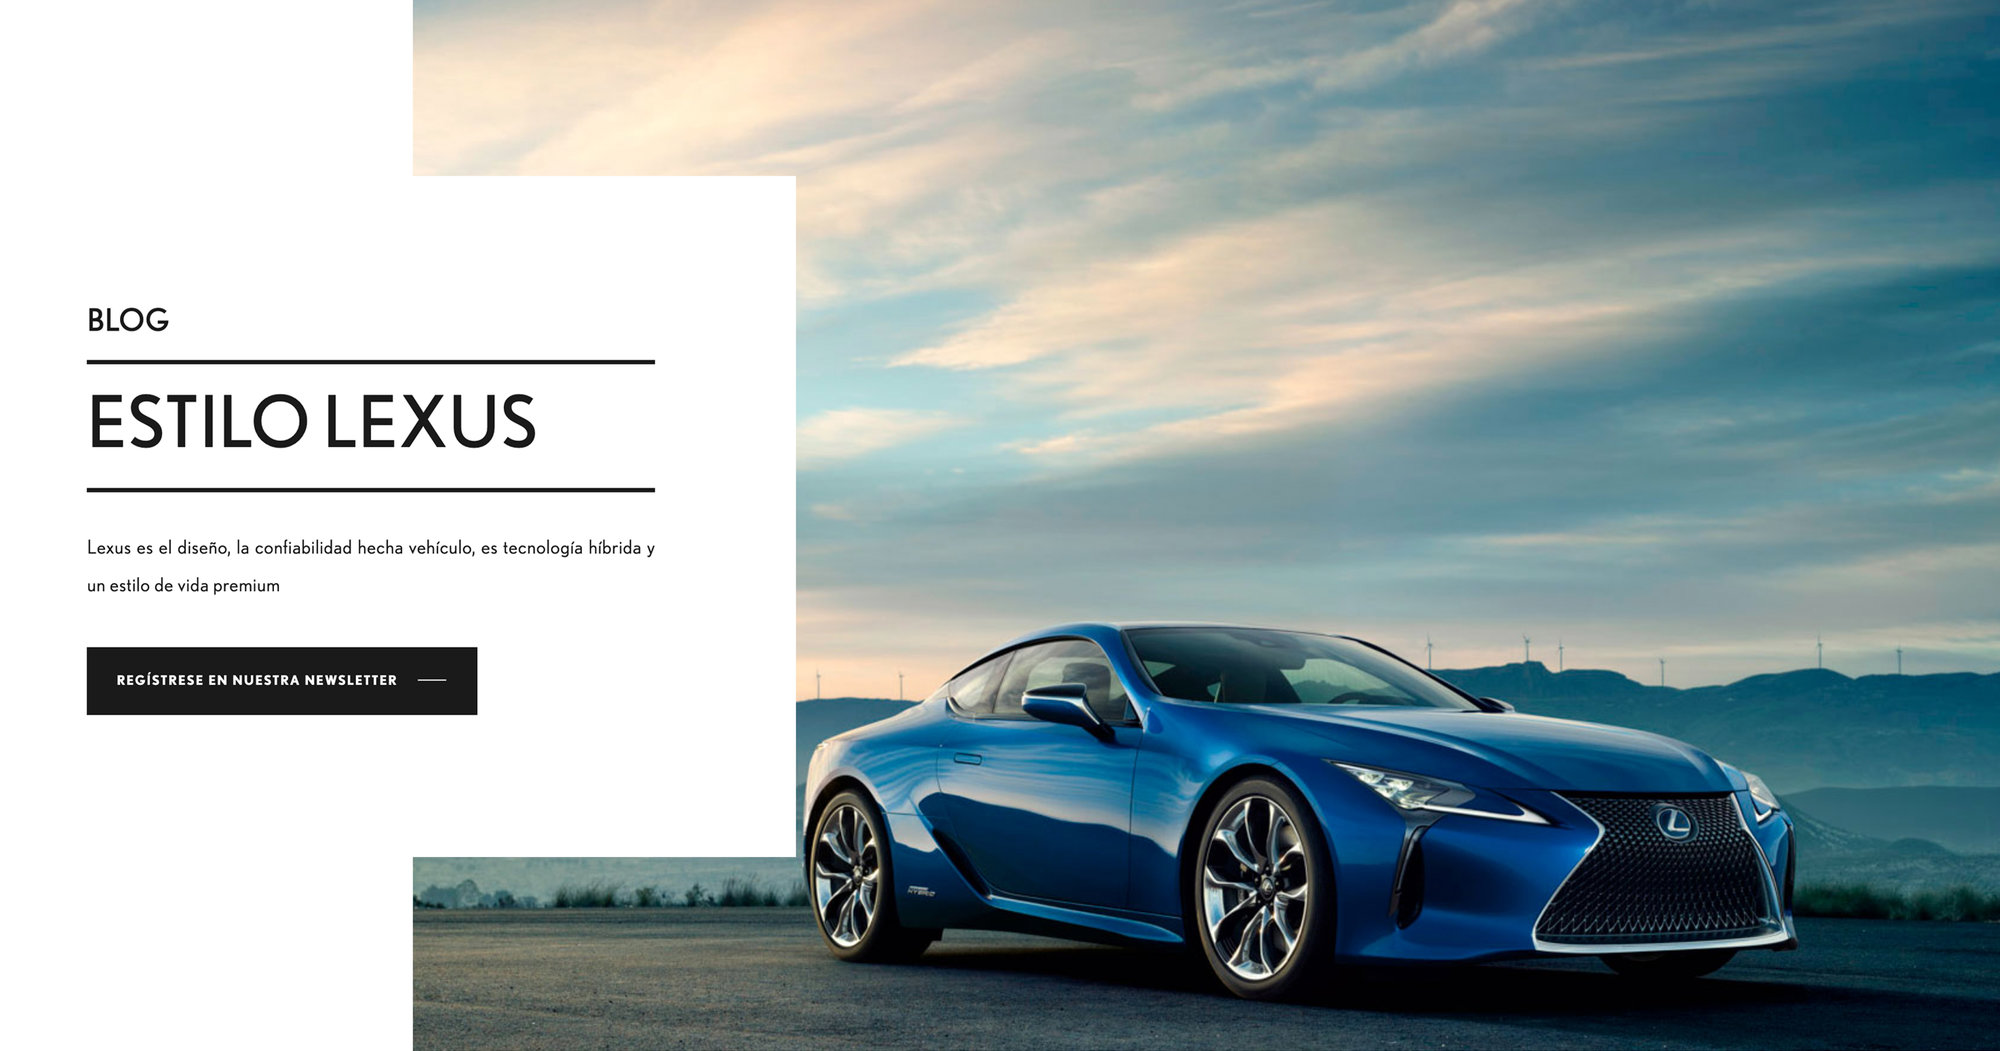 Estilo Lexus: El blog de estilo de vida de Lexus que marca tendencia